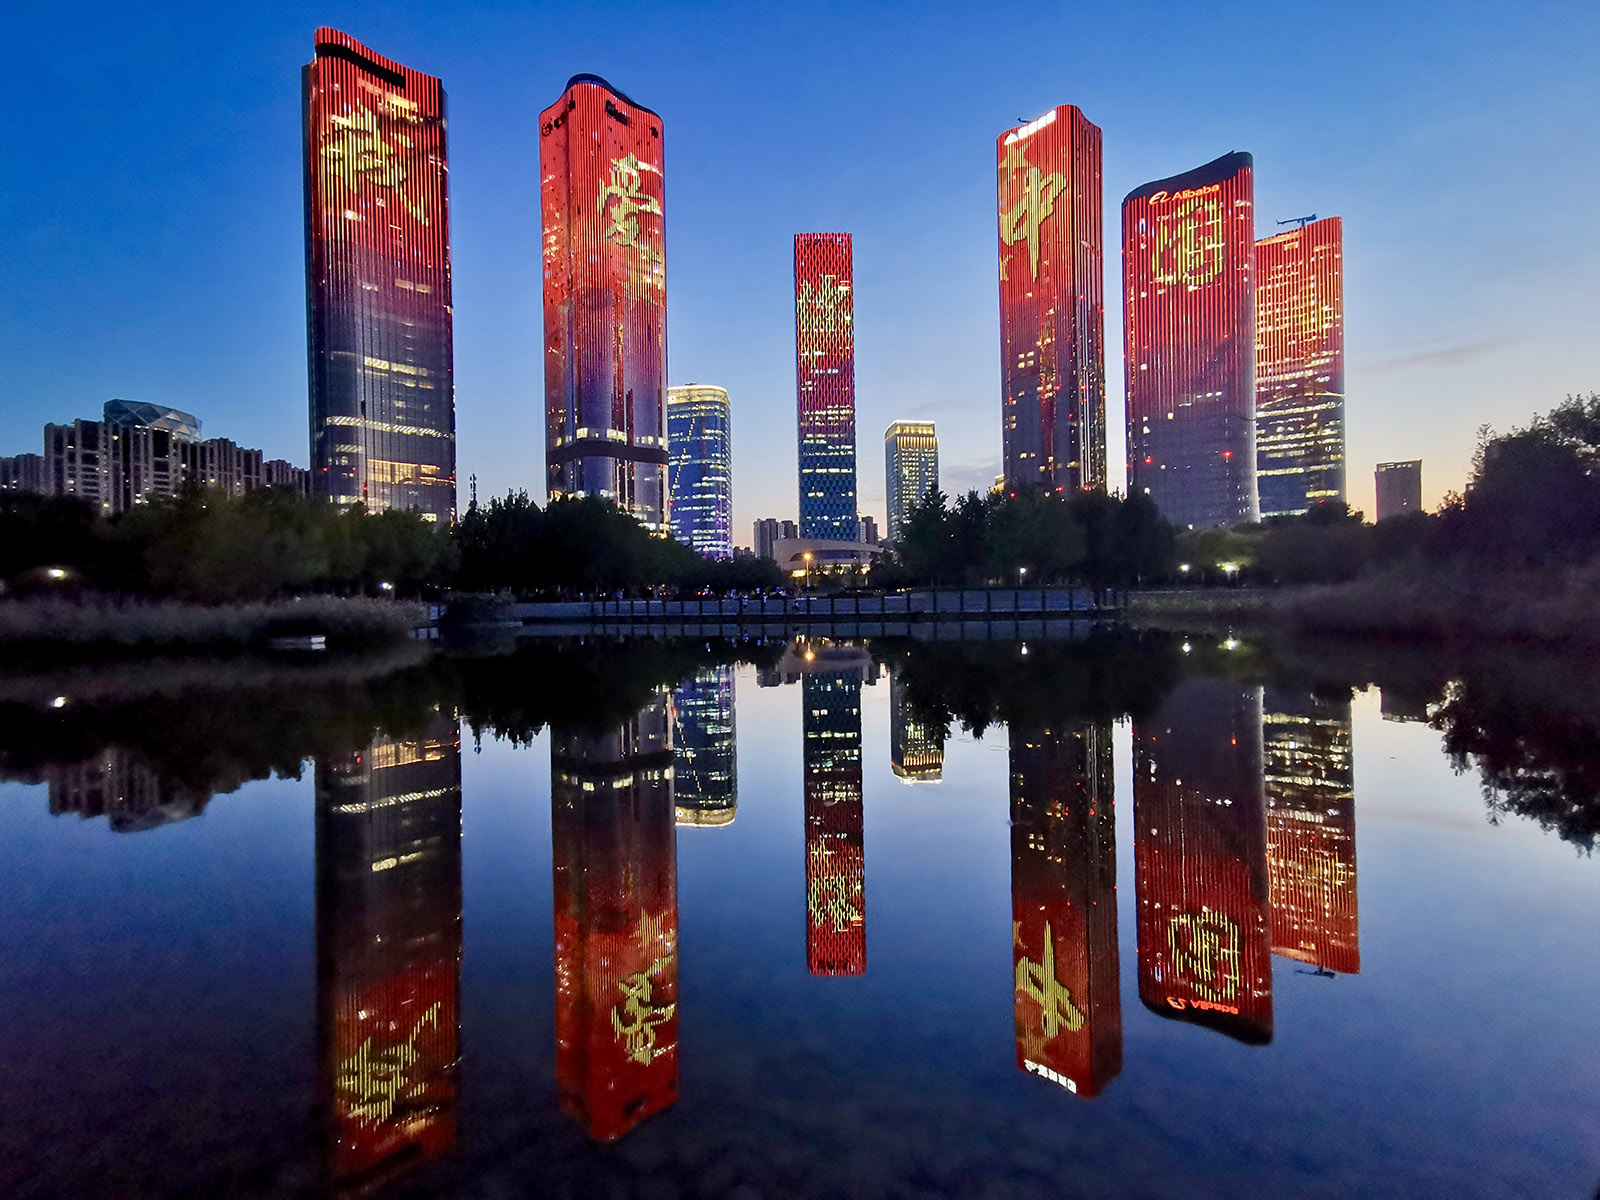 張浩博(小學組)北京《我愛你，祖國》 在偉大祖國70歲生日即將來臨之際，我在路邊看到對面高樓上的彩燈和“我愛你中國”字樣，激動地拍下了這張照片。搜索復制